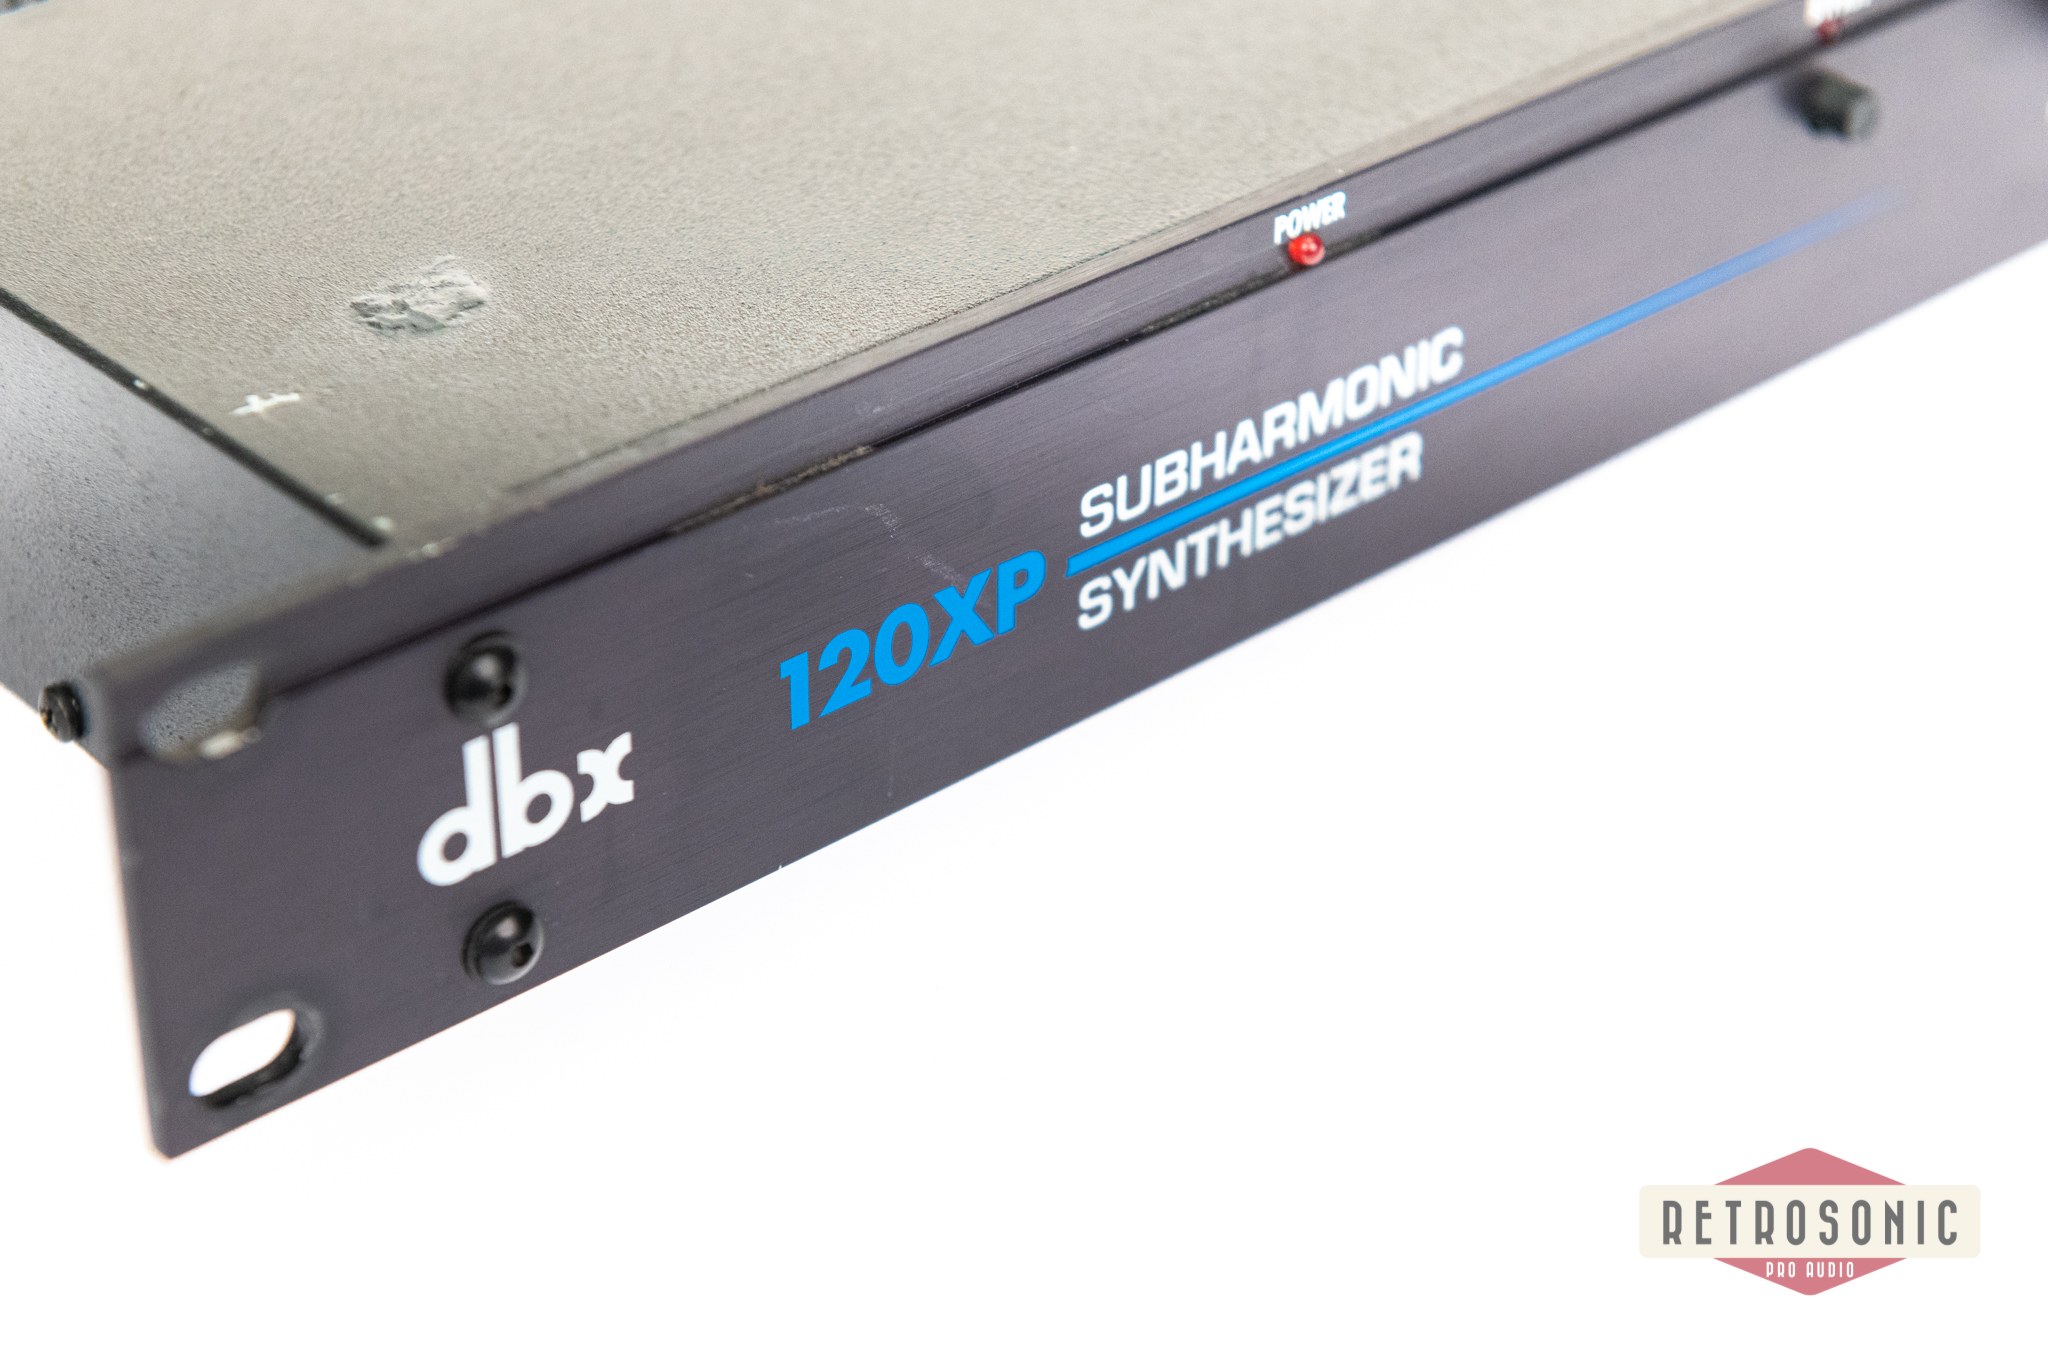 DBX 120XP Subharmonic Synthesizer #1